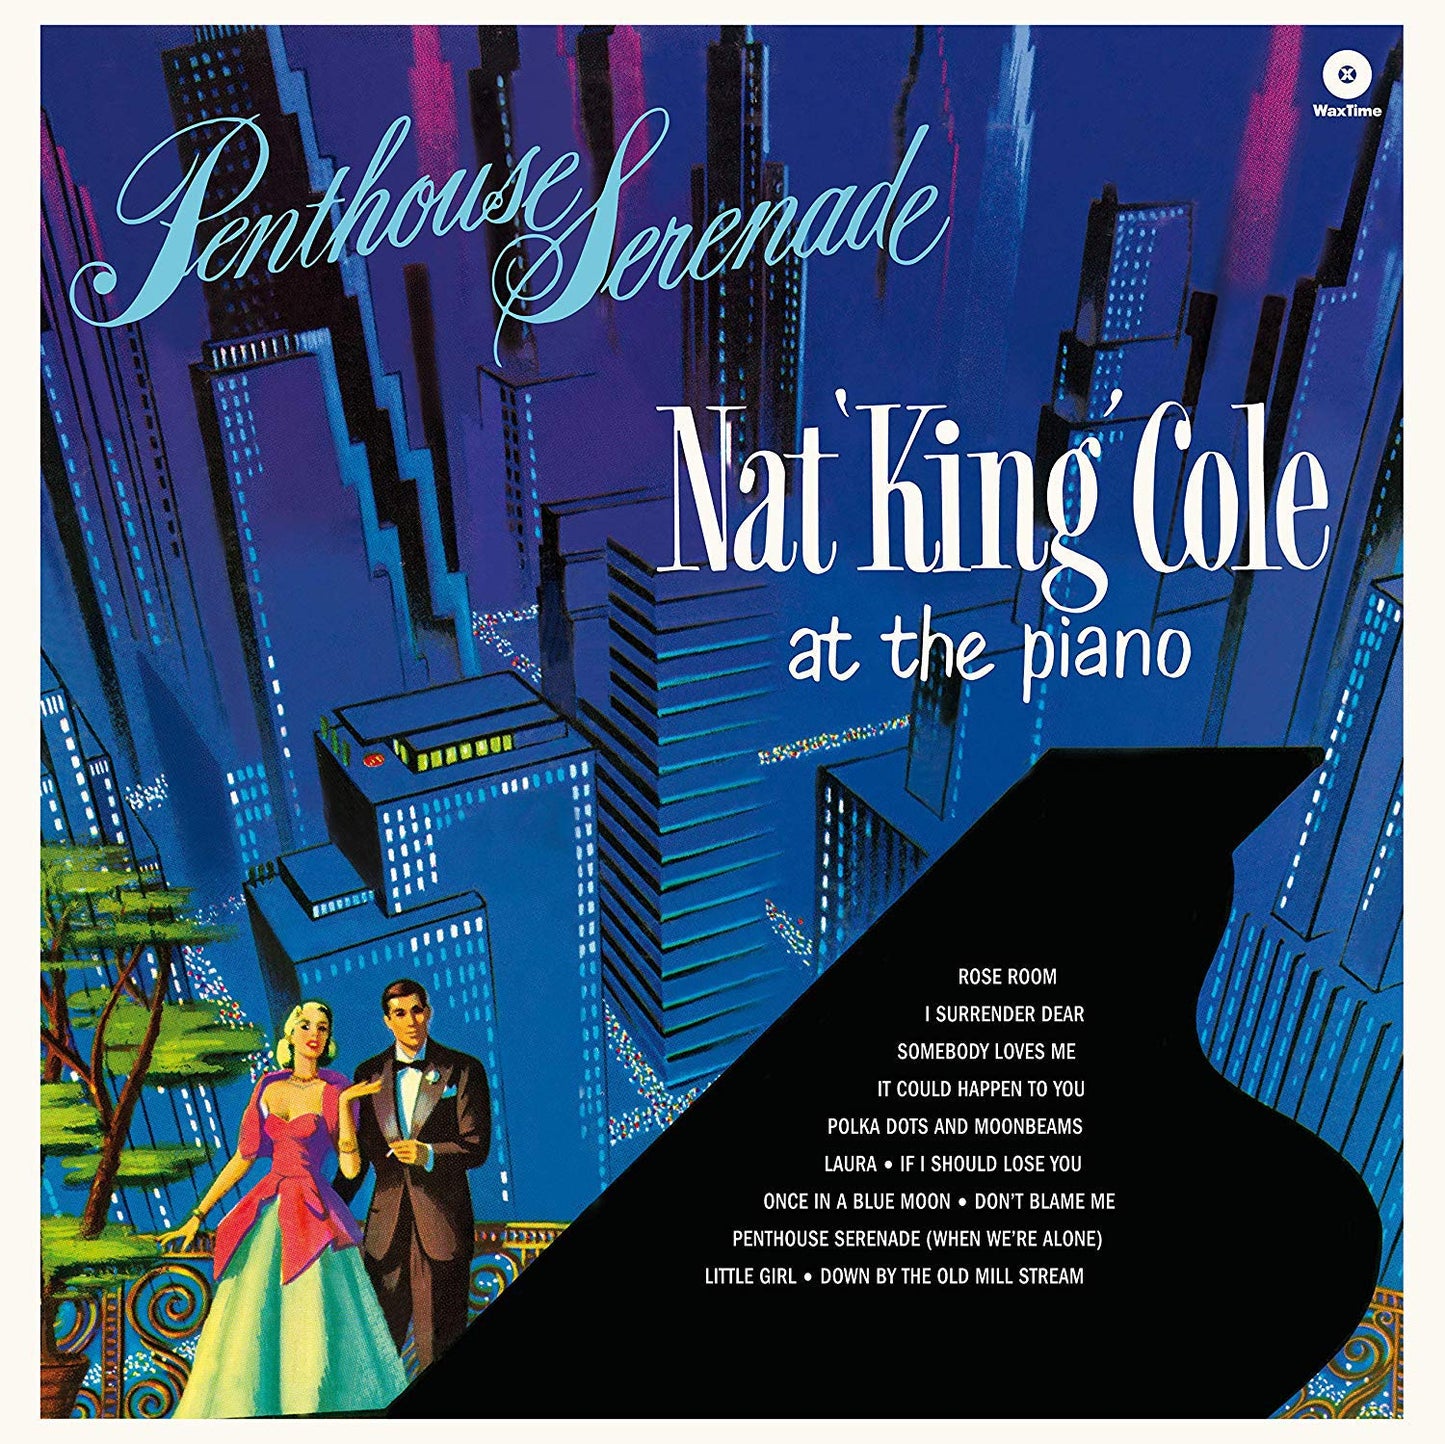 Cole, Nat King/Penthouse Serenade [LP]